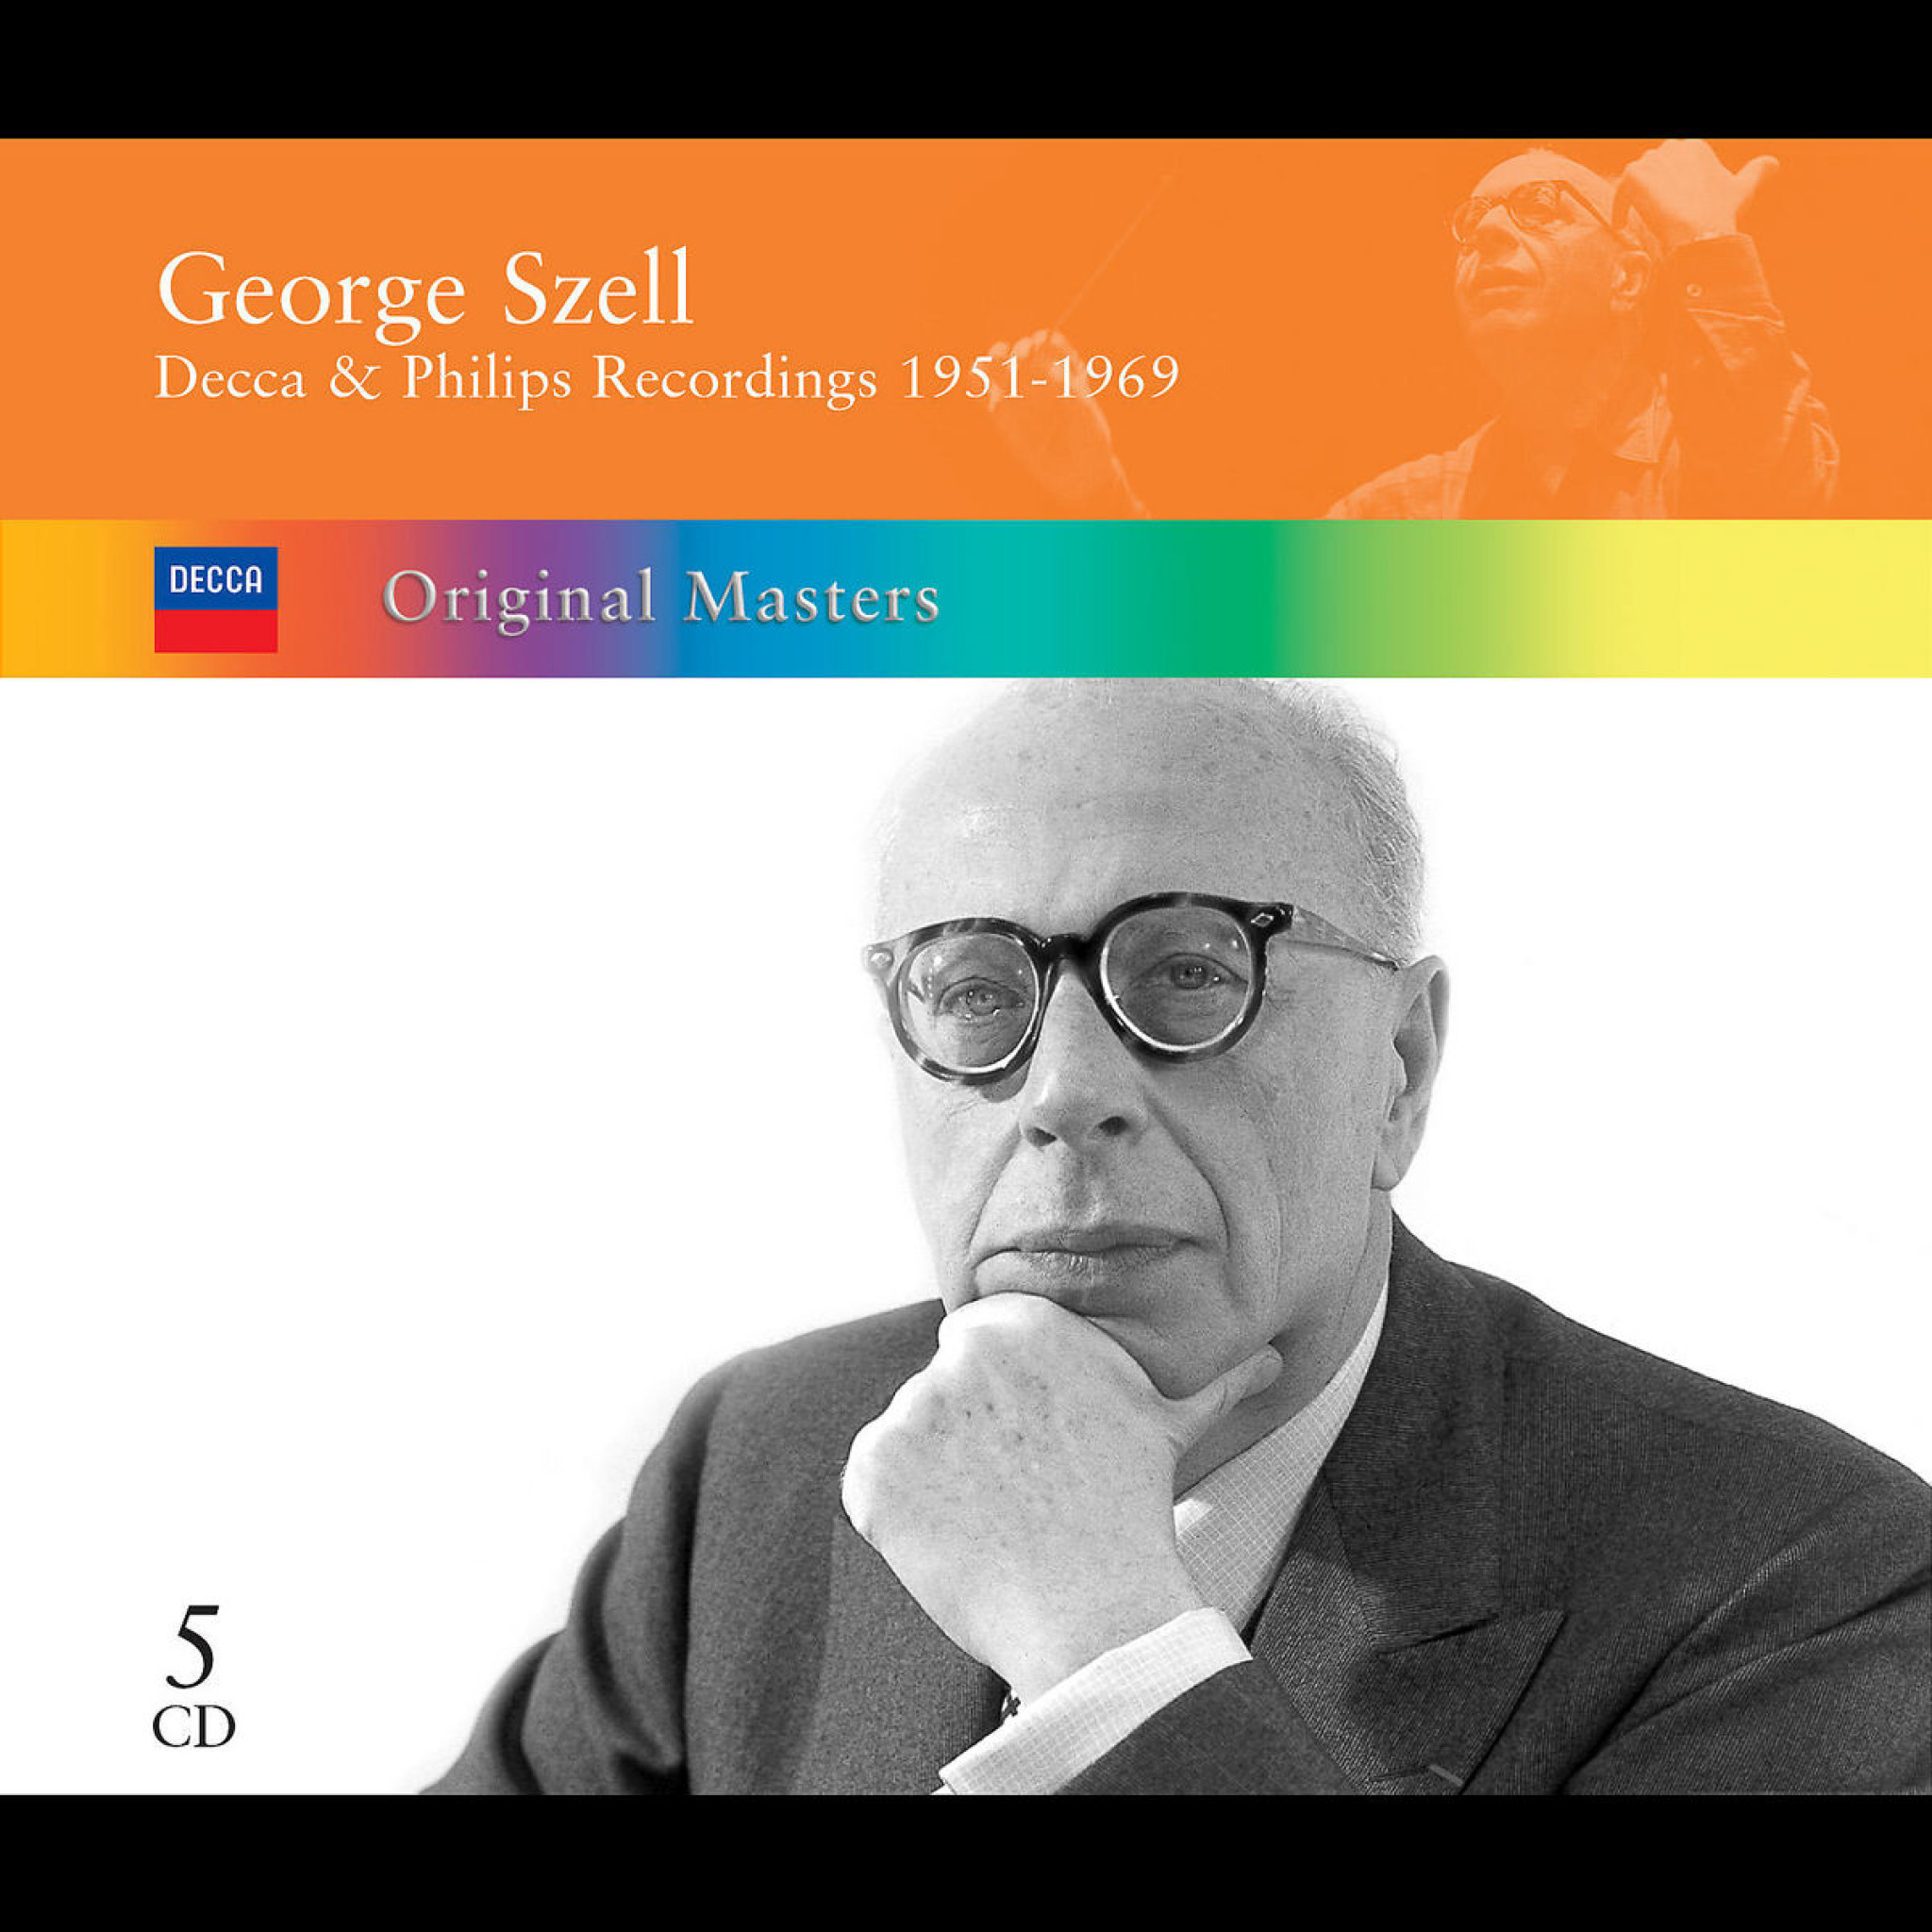 GEORGE SZELL